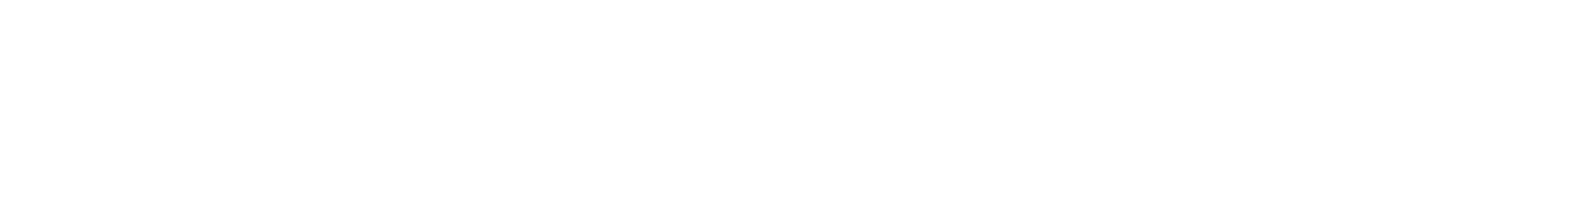 Midwest Holding logo grand pour les fonds sombres (PNG transparent)